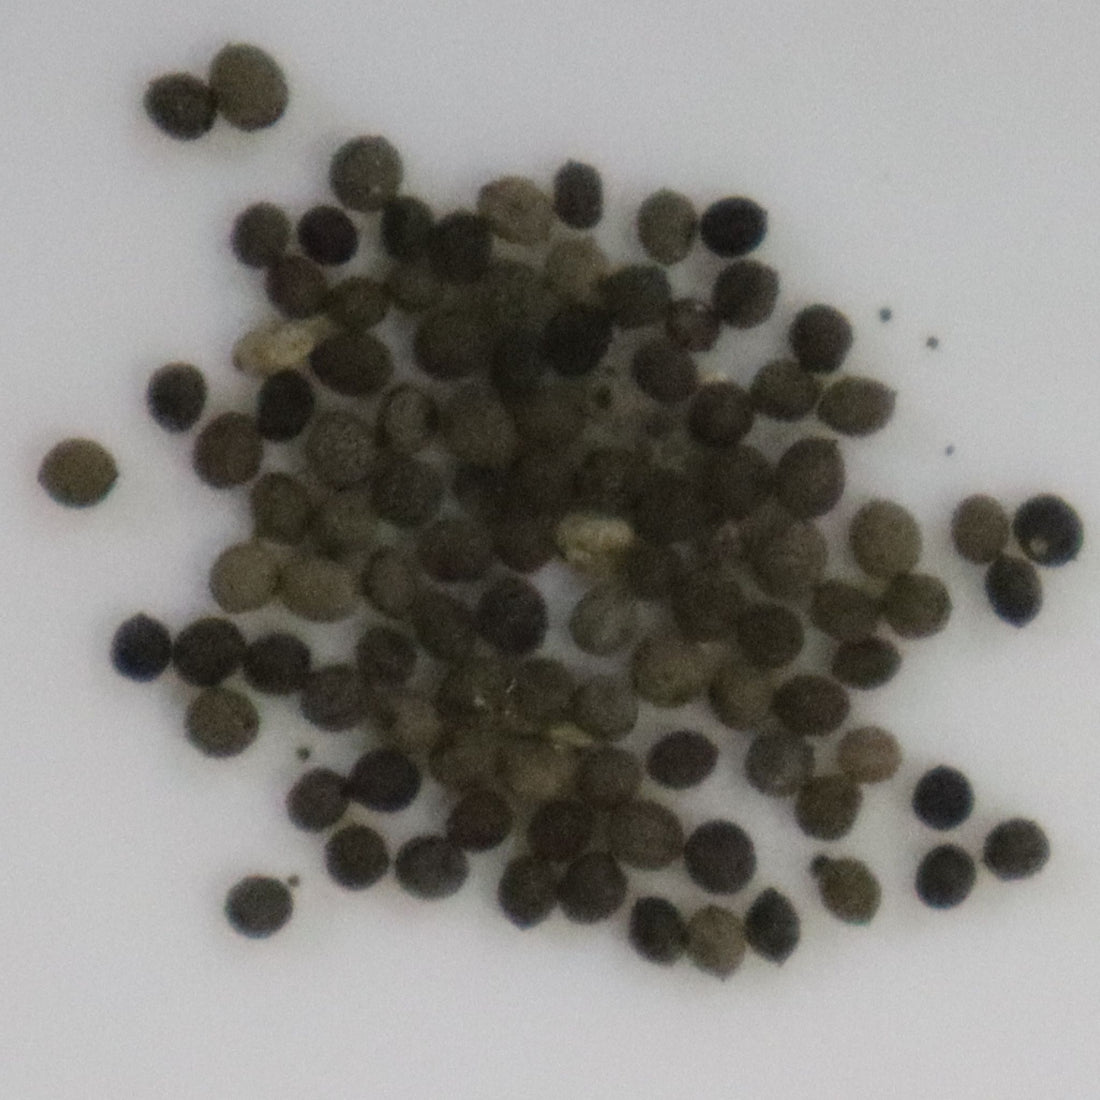 Eschscholzia California Poppy Seeds